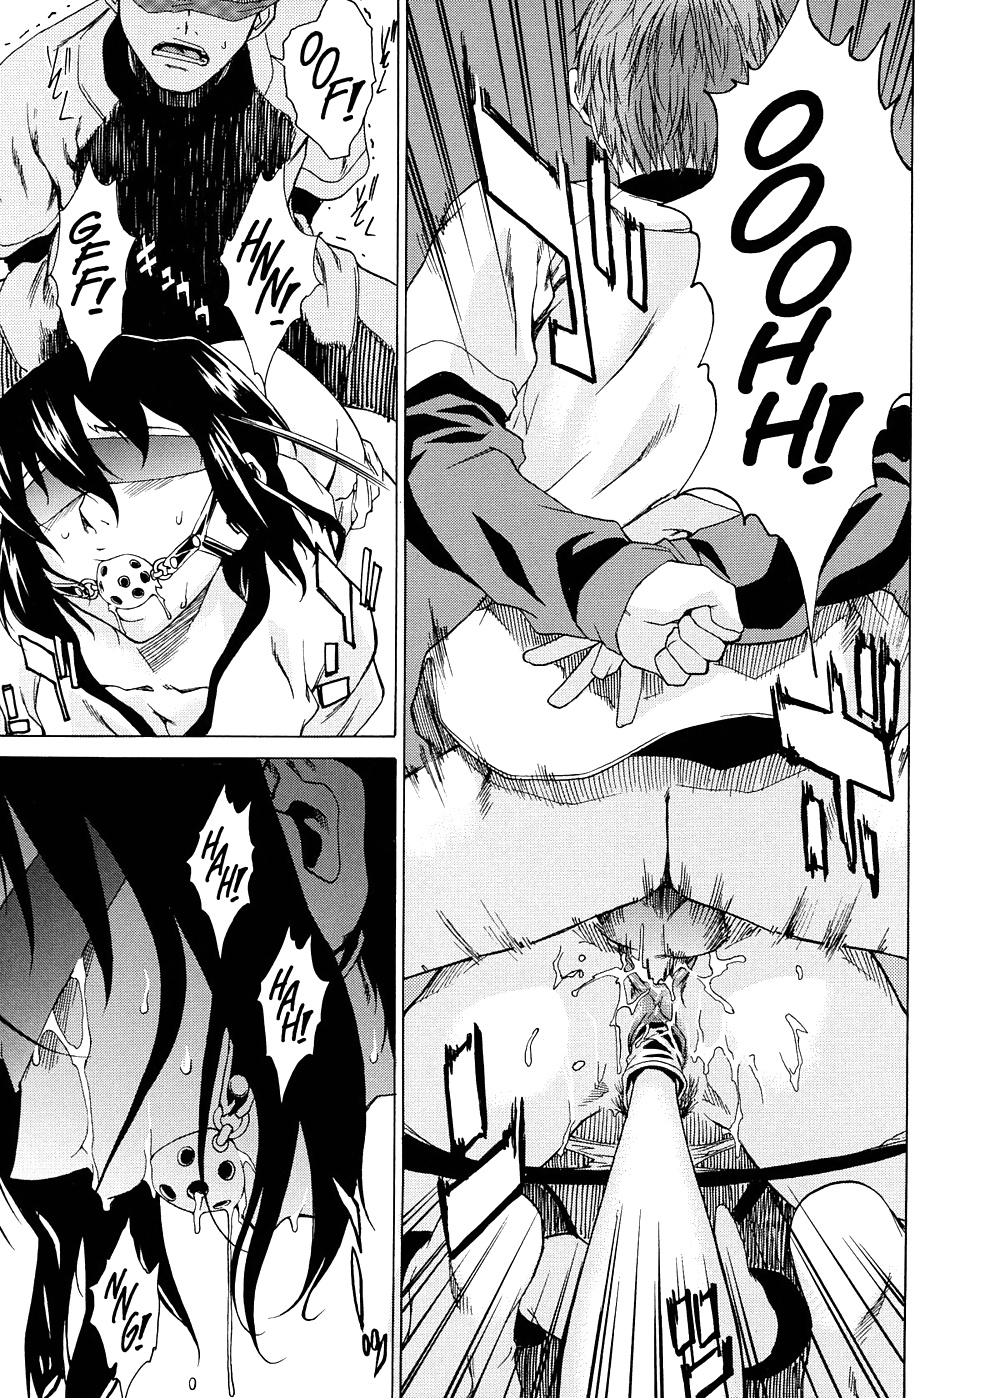 Domin-8 Me   Take On me   Hentai Manga Part 2 (62/98)